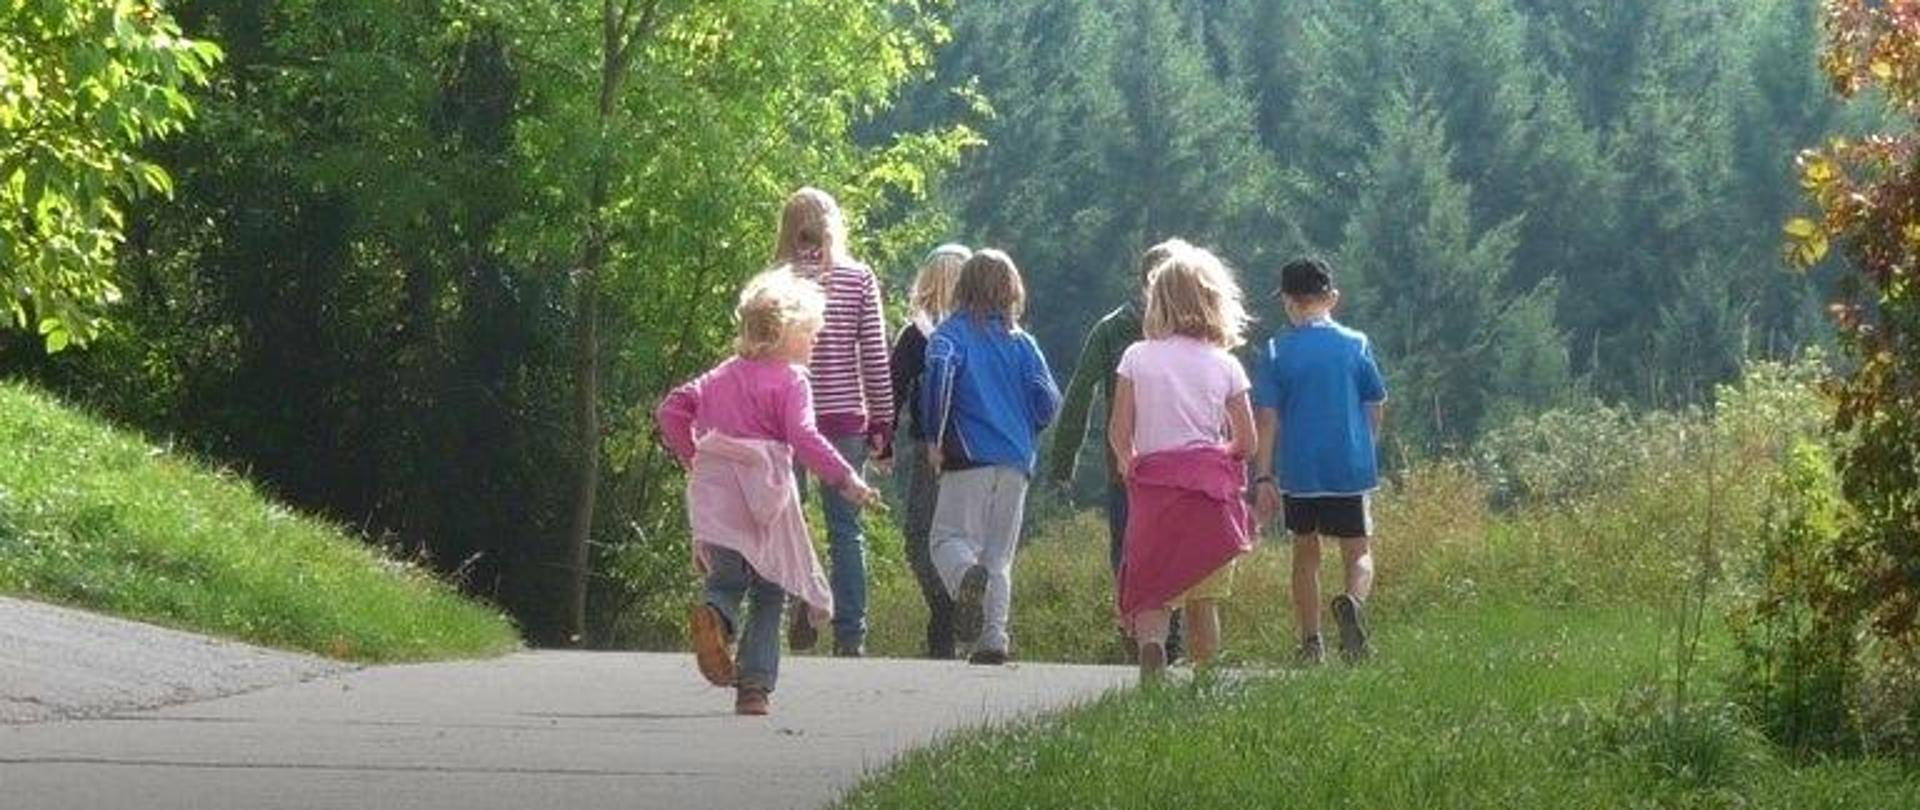 grupa dzieci idzie leśna drogą